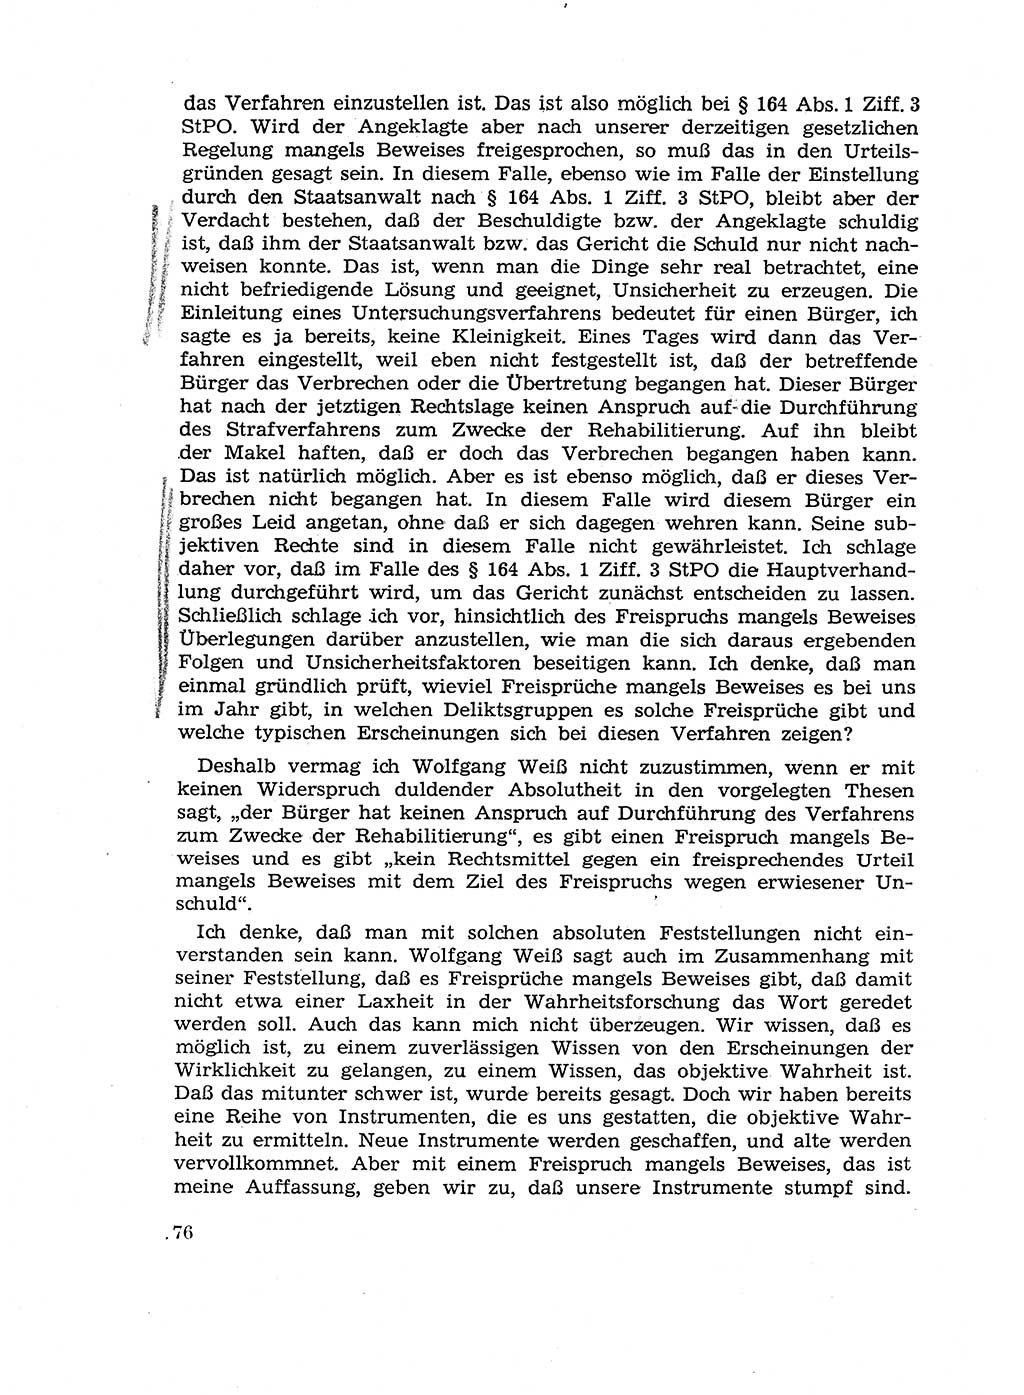 Fragen des Beweisrechts im Strafprozess [Deutsche Demokratische Republik (DDR)] 1956, Seite 76 (Fr. BeweisR. Str.-Proz. DDR 1956, S. 76)